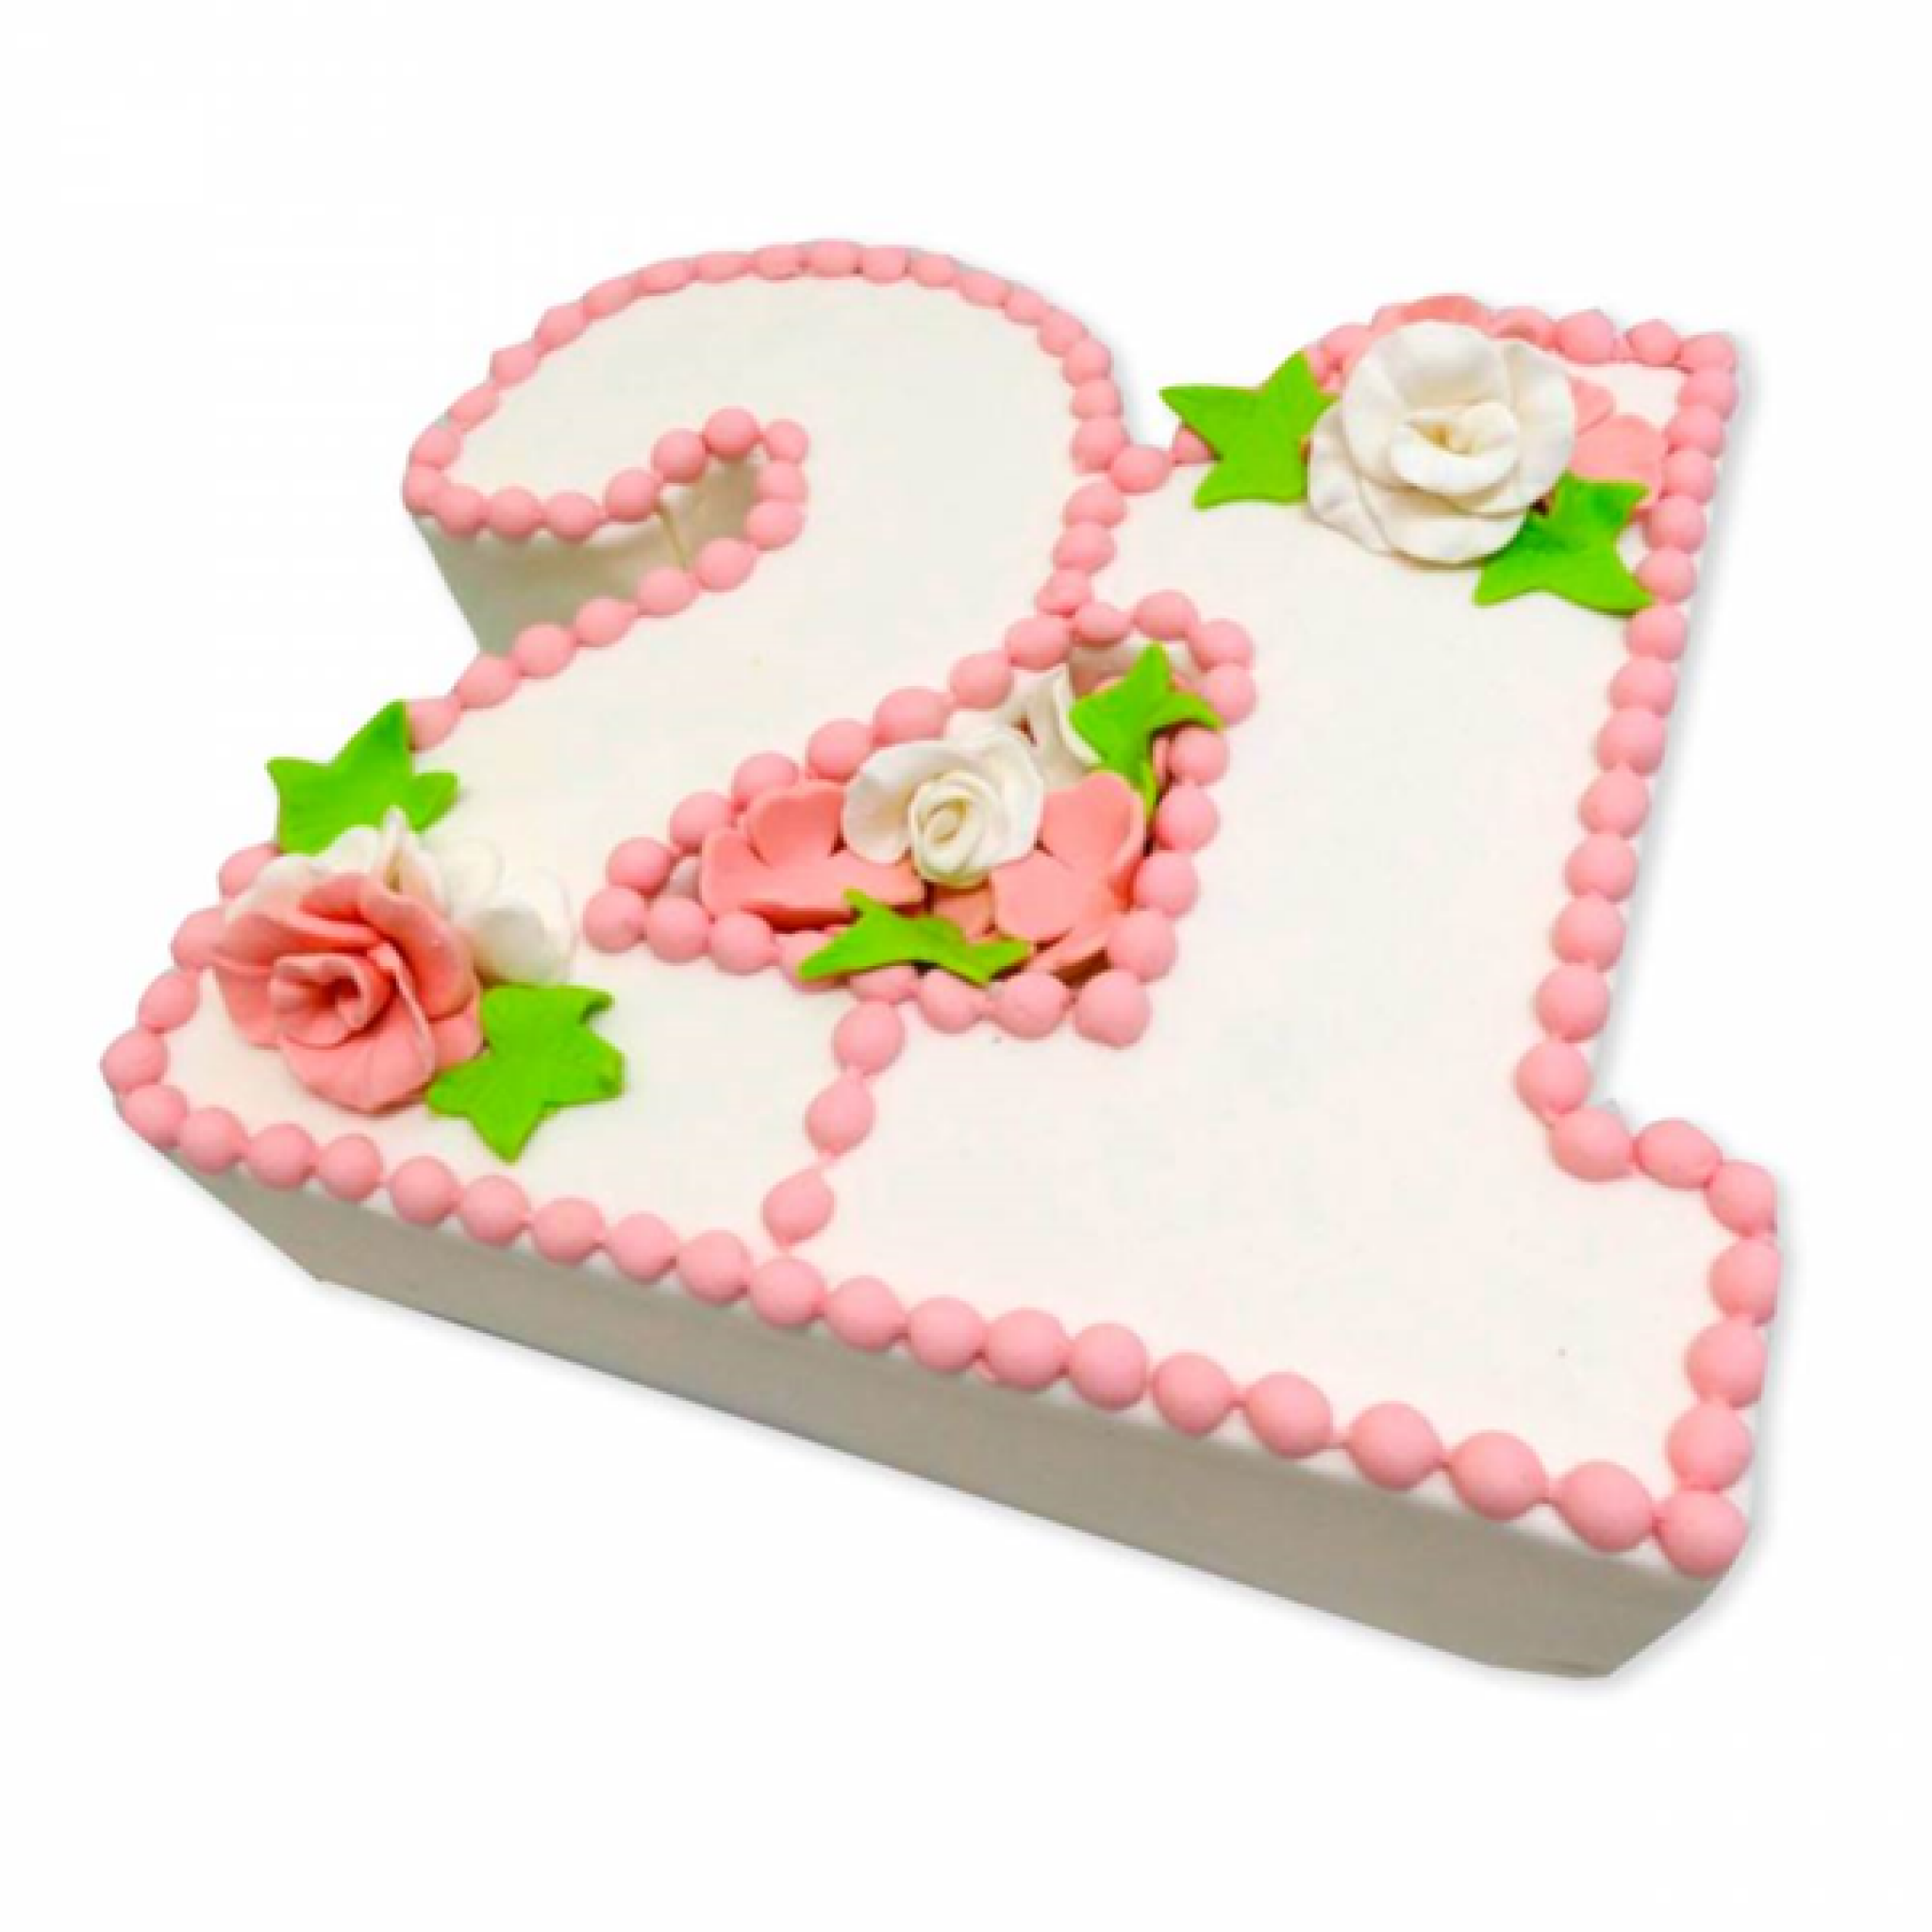 21 Год свадьбы. Торт на 21 годовщину свадьбы. С 21 летием совместной жизни. С годовщиной 21 год совместной жизни.